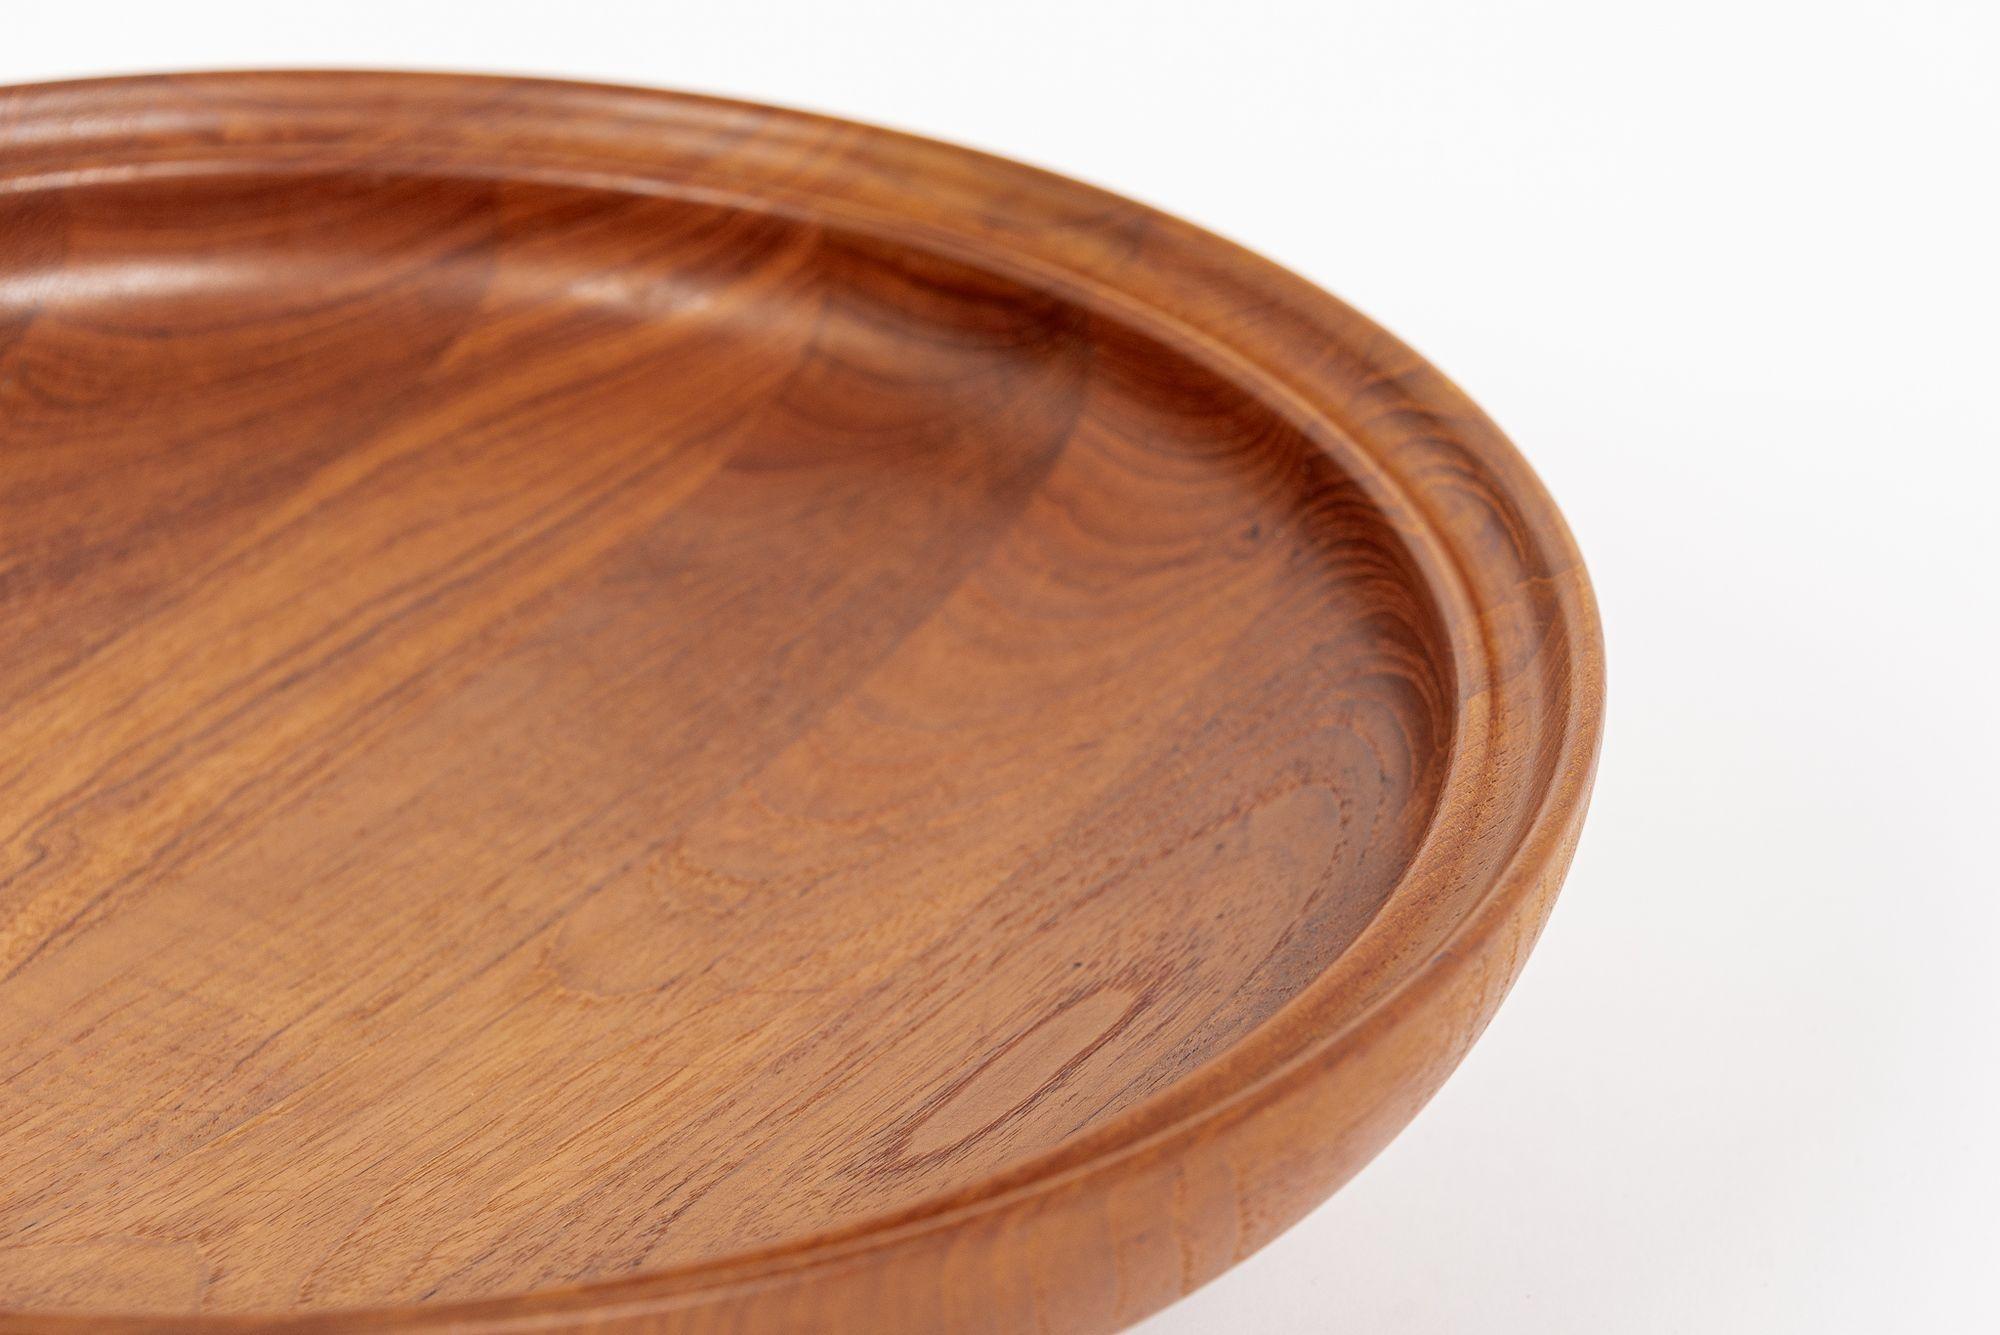 Danish Modern Large Teak Wood Bowl by Henning Koppel for Georg Jensen For Sale 3